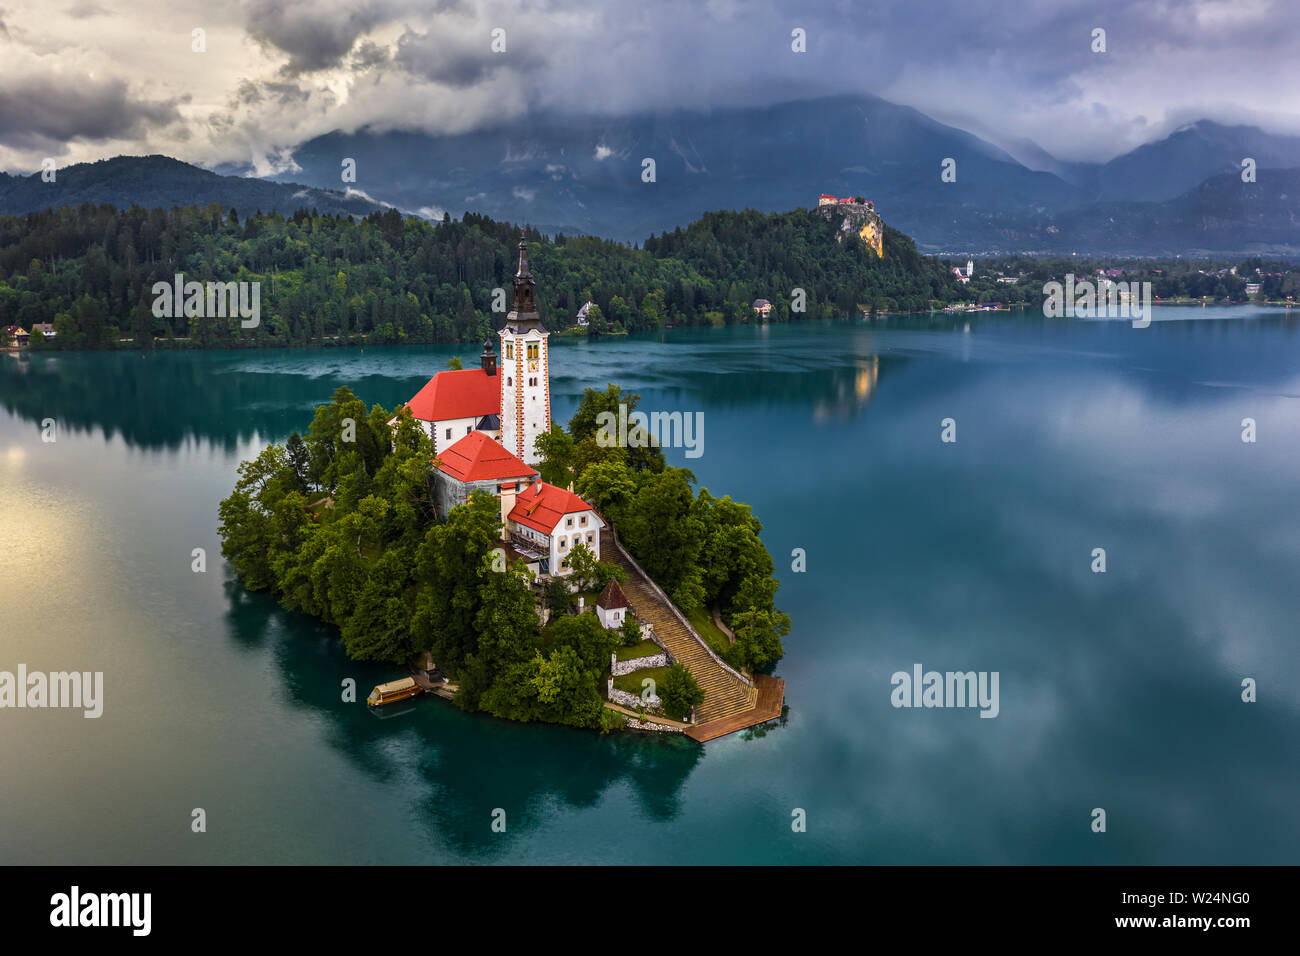 Der See von Bled, Slowenien - Luftbild des schönen Sees Bled (Blejsko Jezero) mit der Wallfahrtskirche Mariä Himmelfahrt der Maria auf einer kleinen Insel und Stockfoto